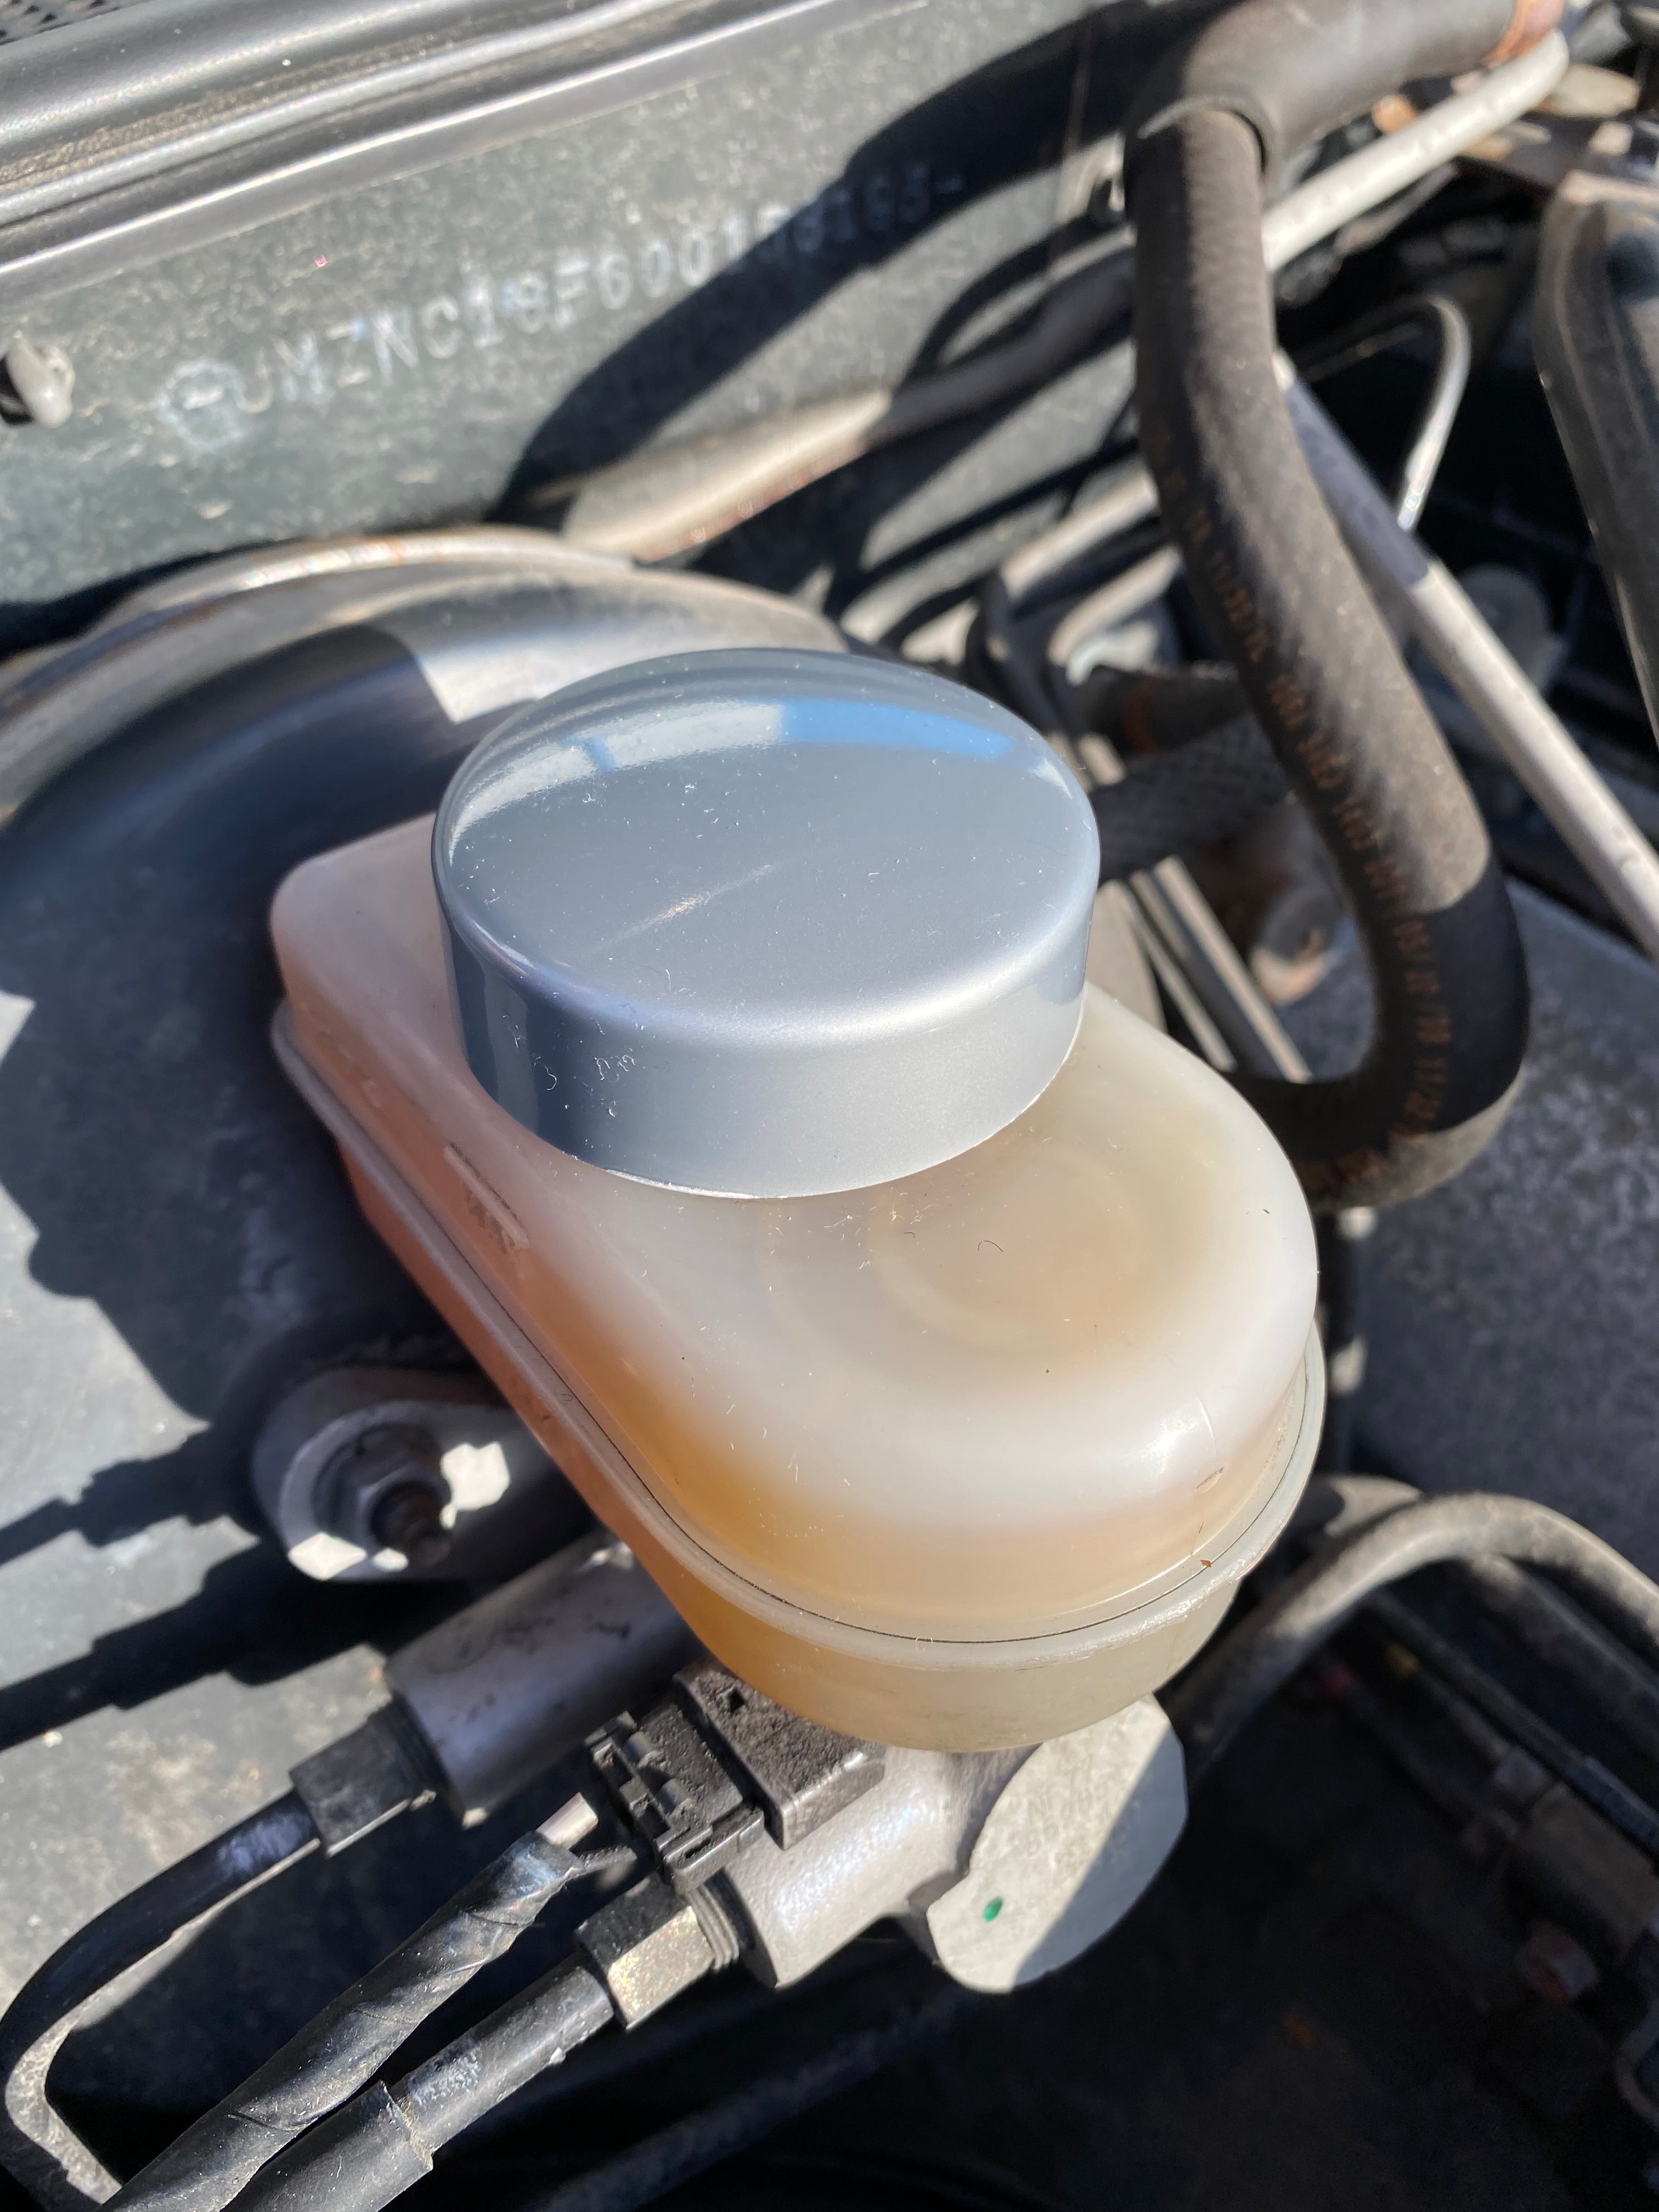 Proform Brake Reservoir Cap Cover - Mazda MX5/Miata Mk3/3.5/NC (Plastic Finishes)